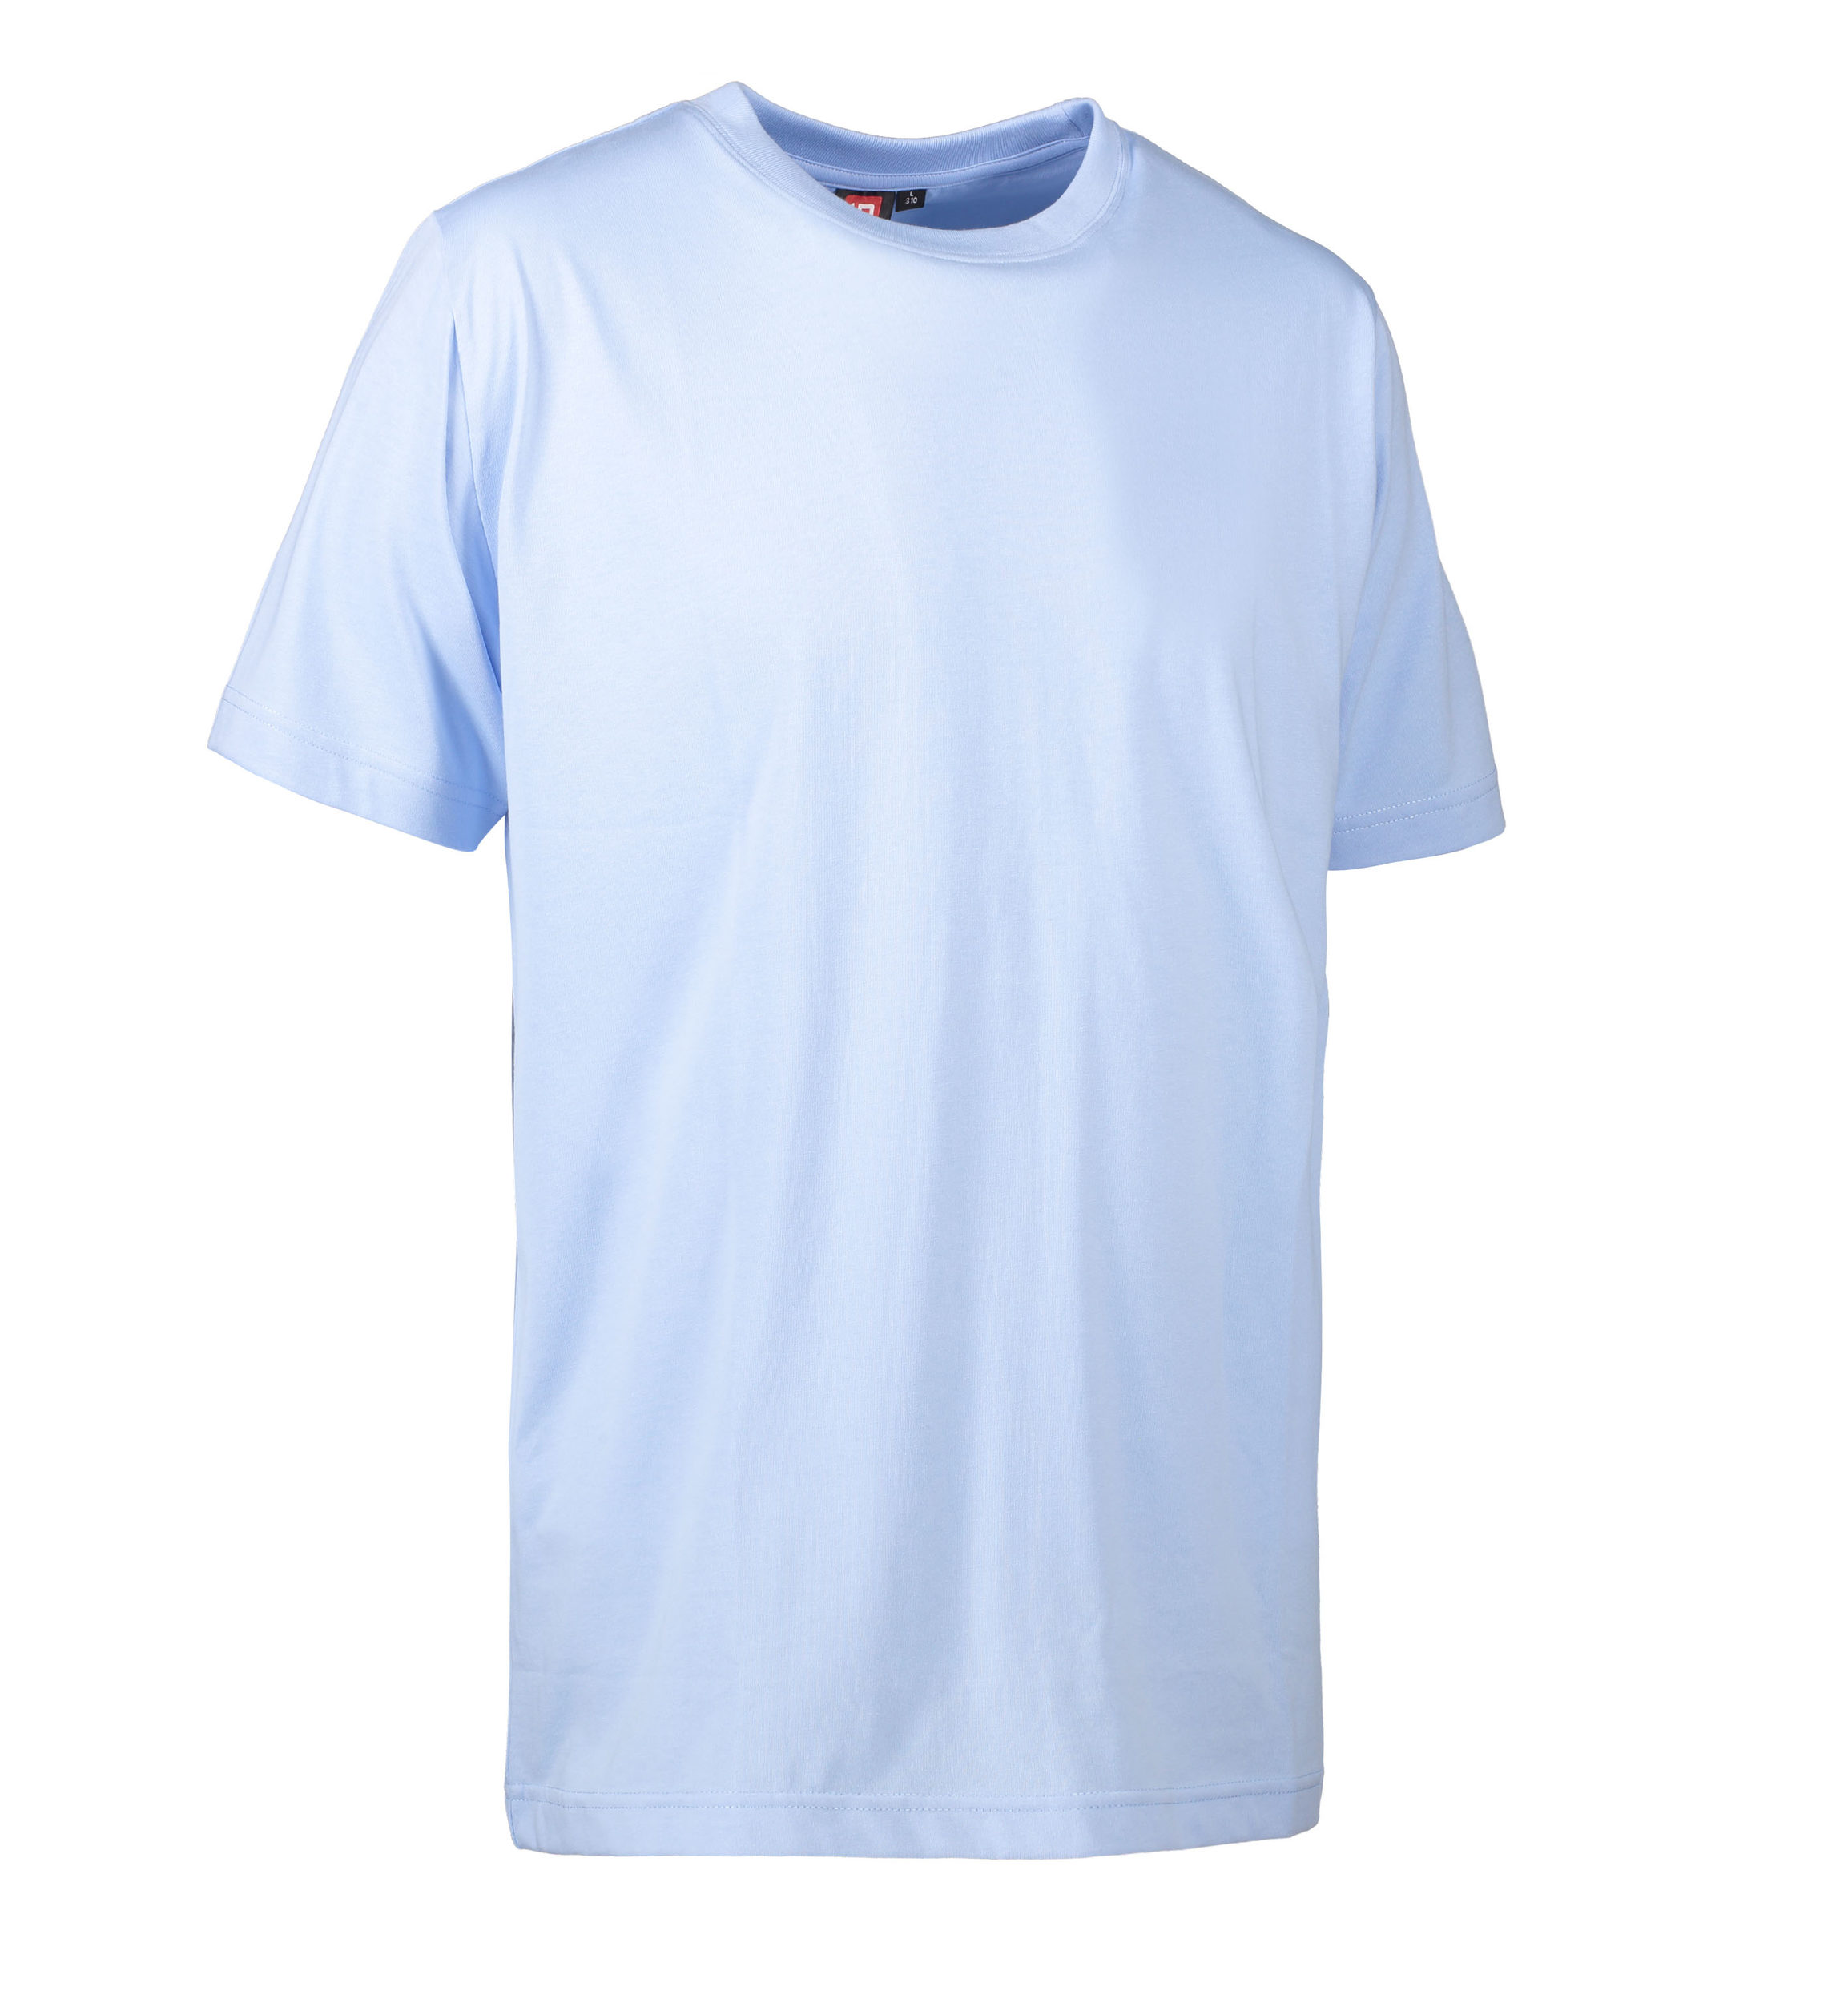 Se Slidstærk t-shirt i lyseblå til mænd - XS hos Sygeplejebutikken.dk